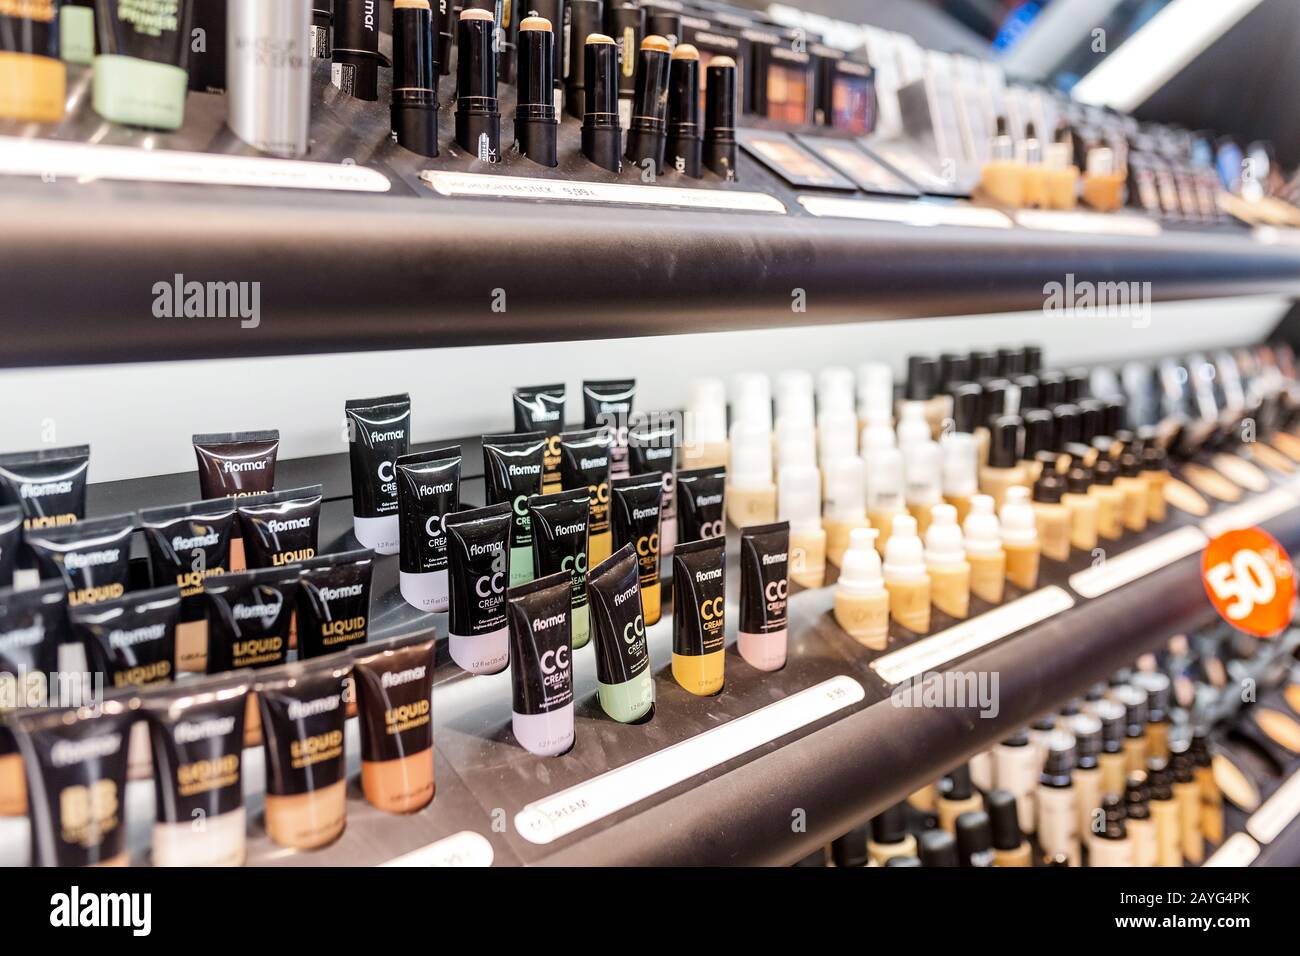 Cosmetic shop immagini e fotografie stock ad alta risoluzione - Alamy